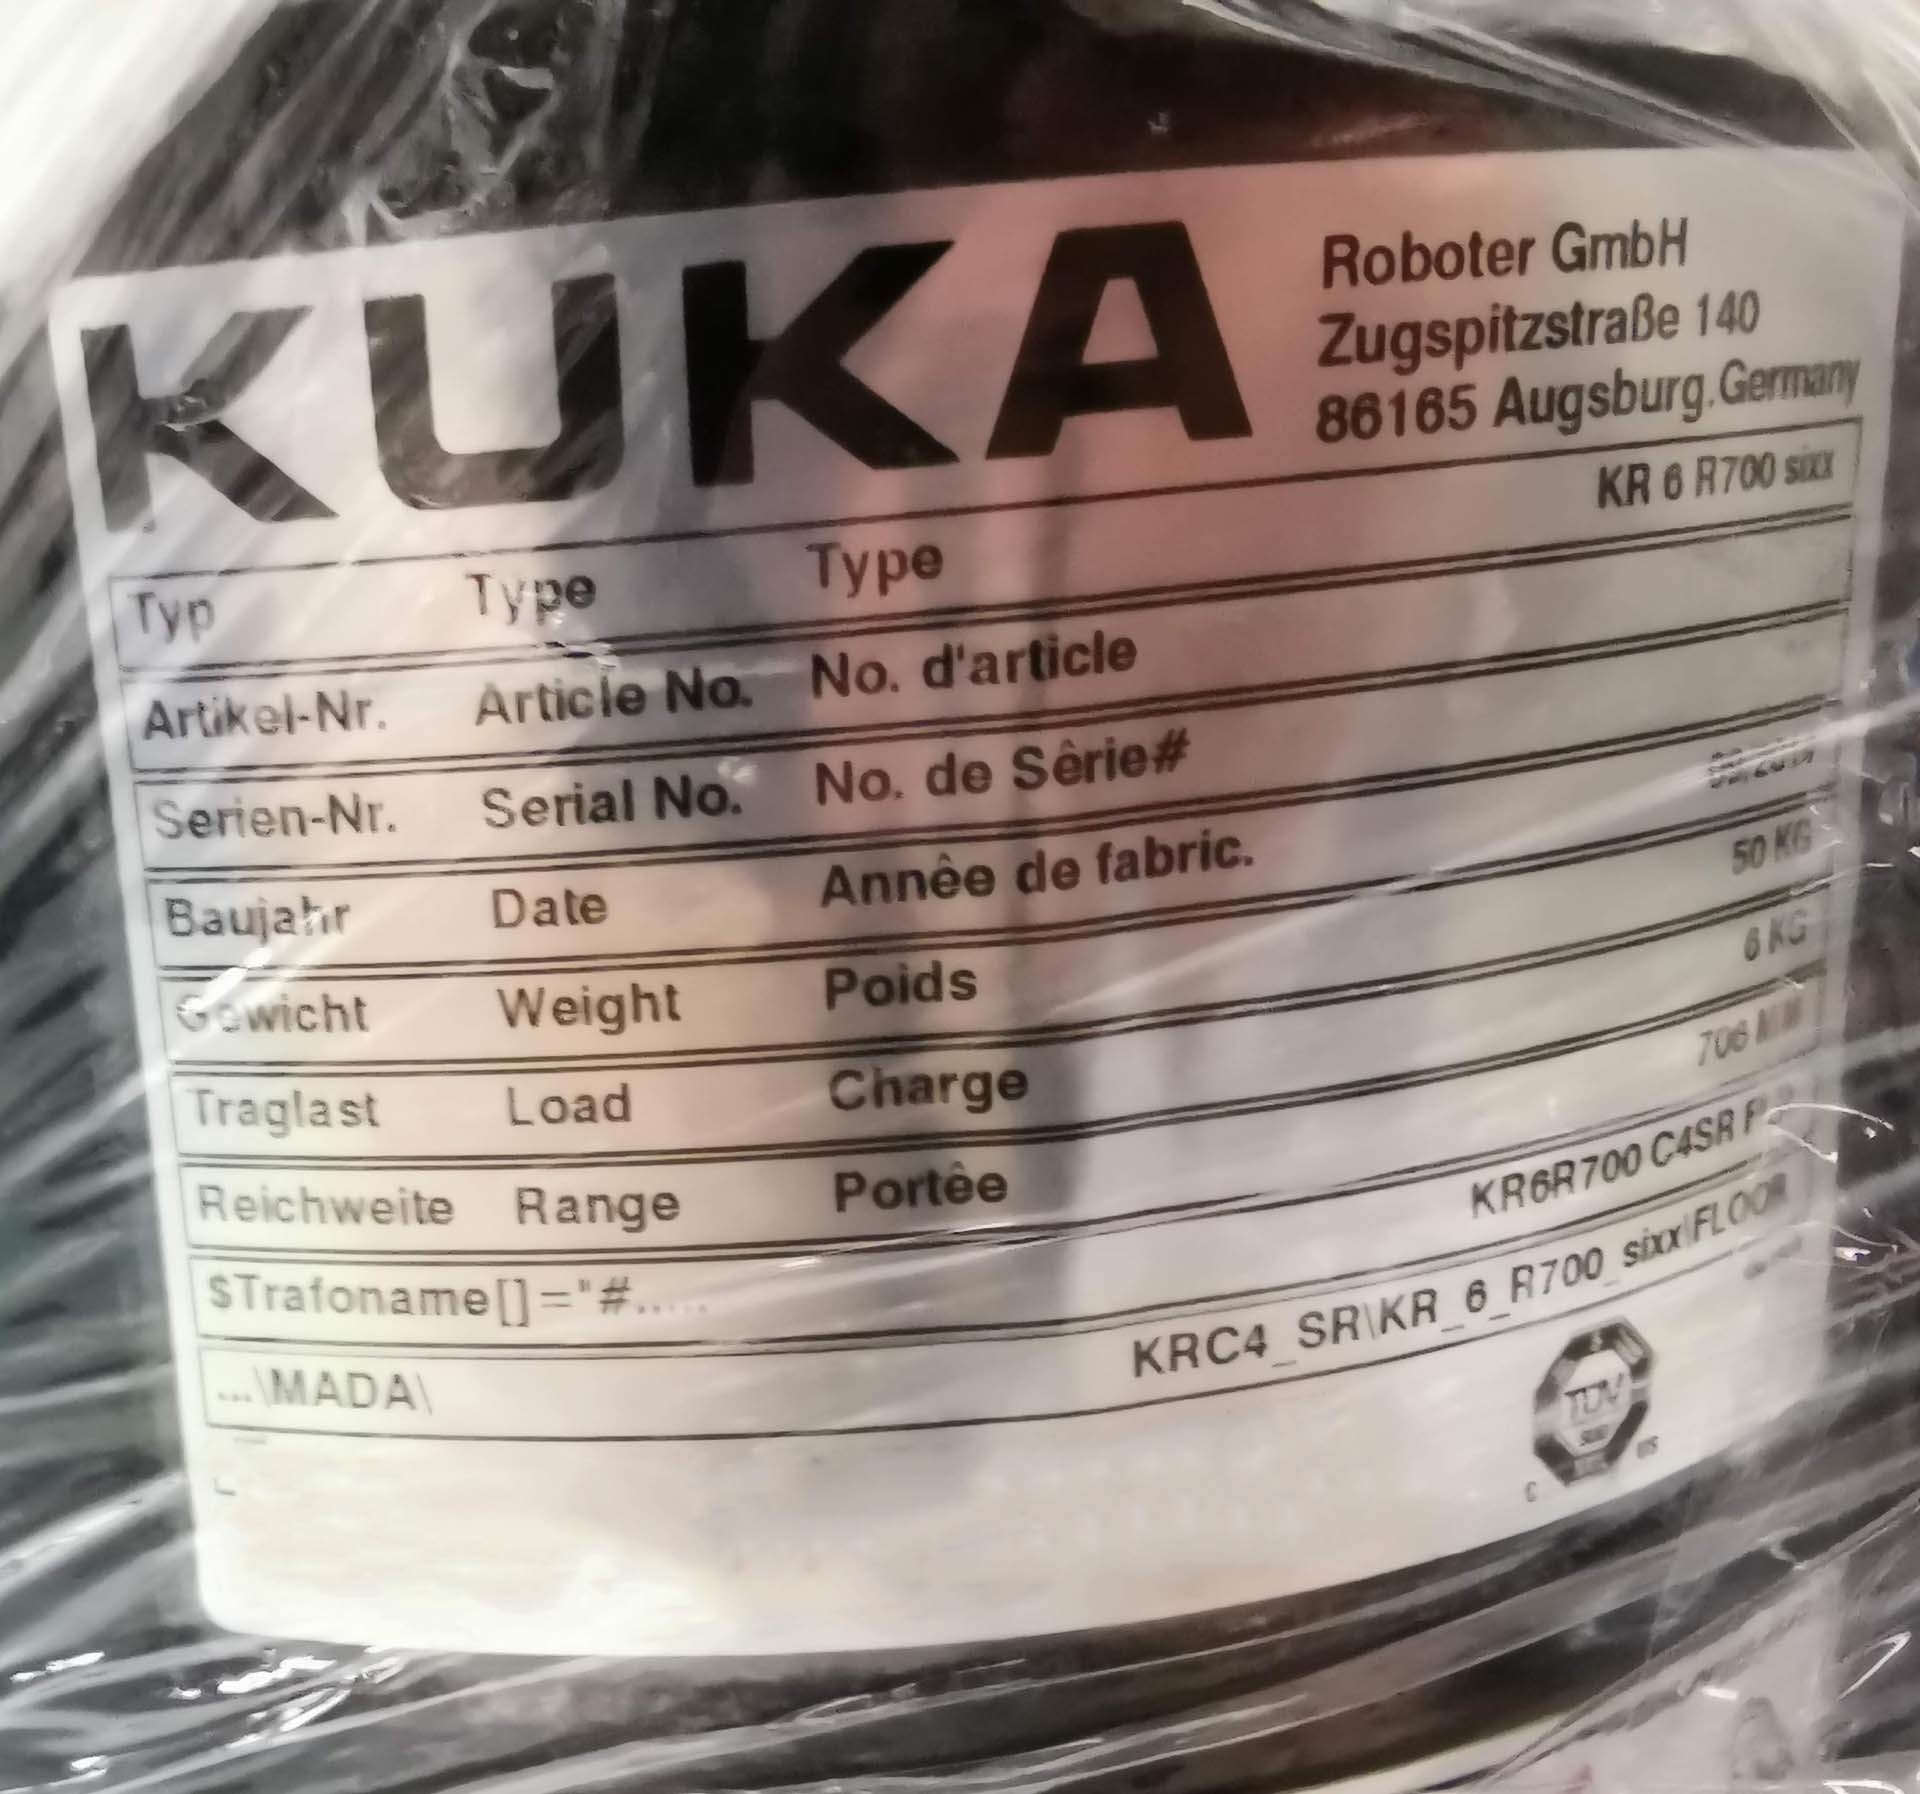 フォト（写真） 使用される KUKA KR 6 R700 sixx 販売のために